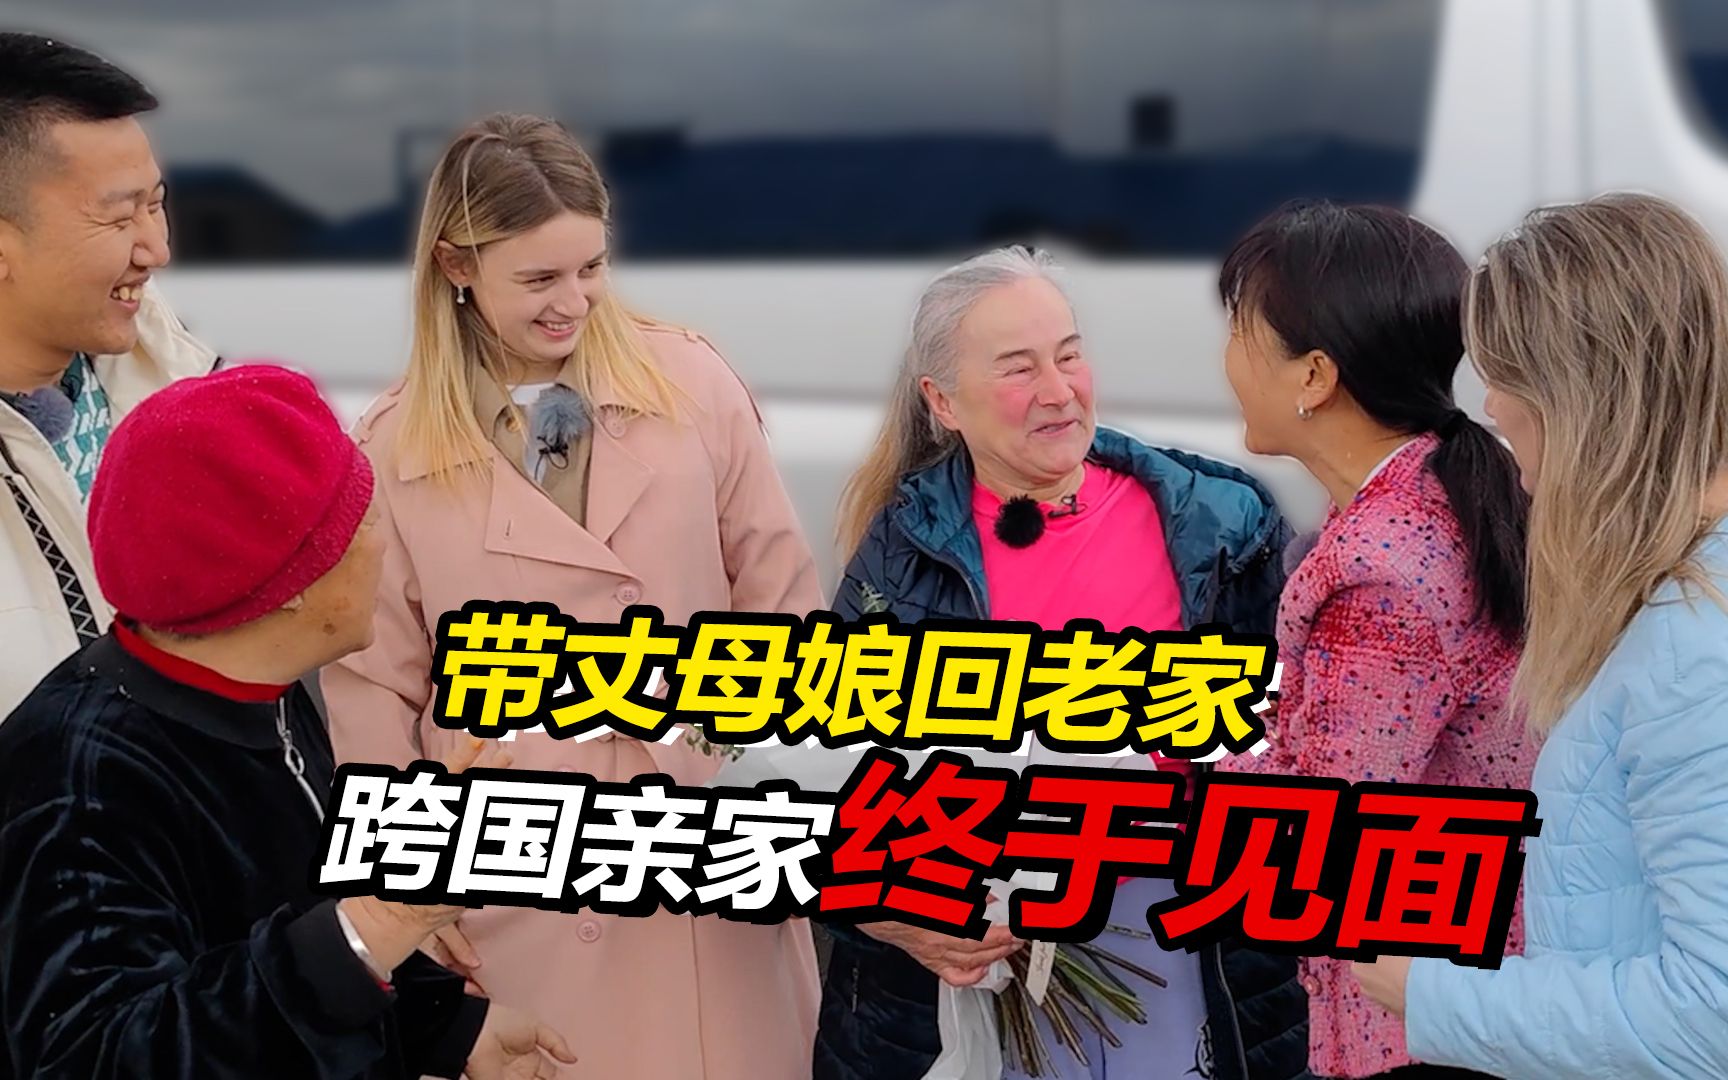 俄罗斯丈母娘和中国亲家第一次见面 互送礼物后感动落泪！